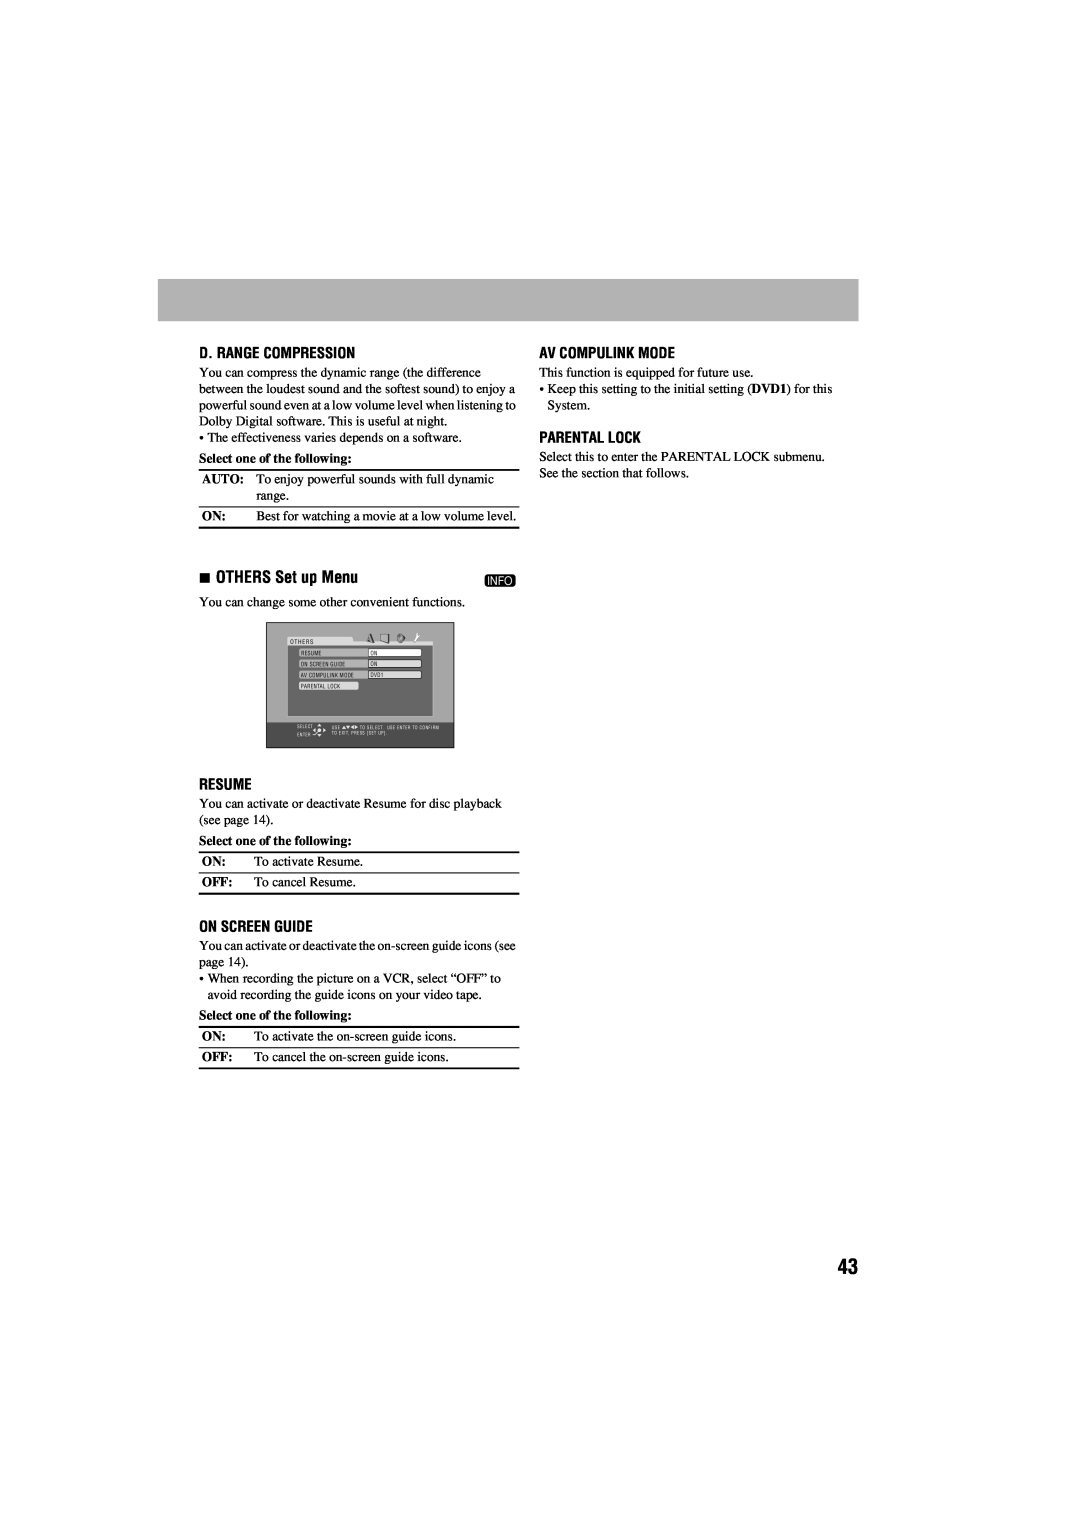 JVC GVT0125-003A manual OTHERS Set up Menu, D. Range Compression, Av Compulink Mode, Parental Lock, Resume, On Screen Guide 